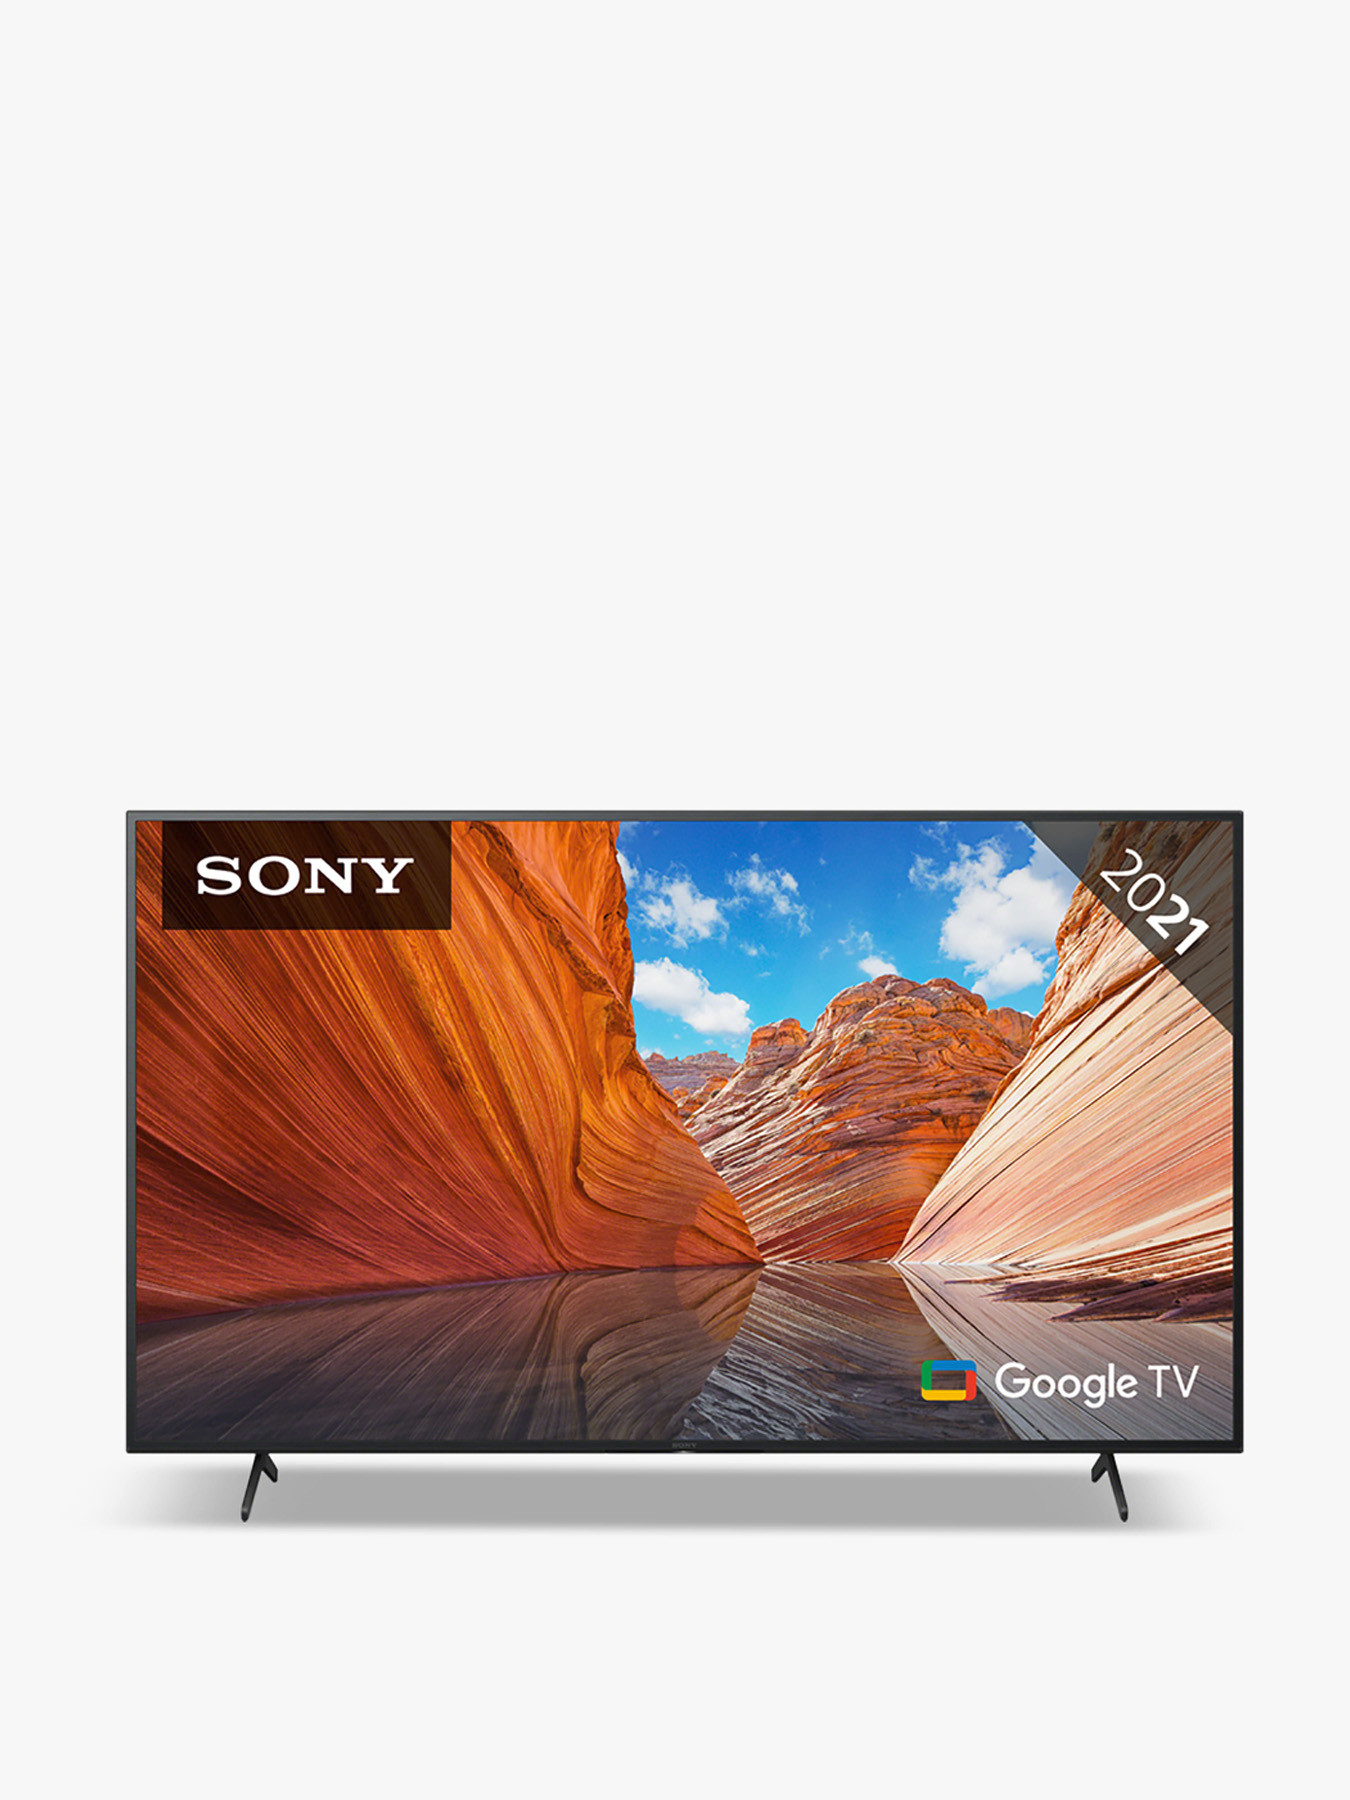 Sony 55'' LED HDR 4k Ultra Smart TV (2021) KD55X80JU | Fenwick